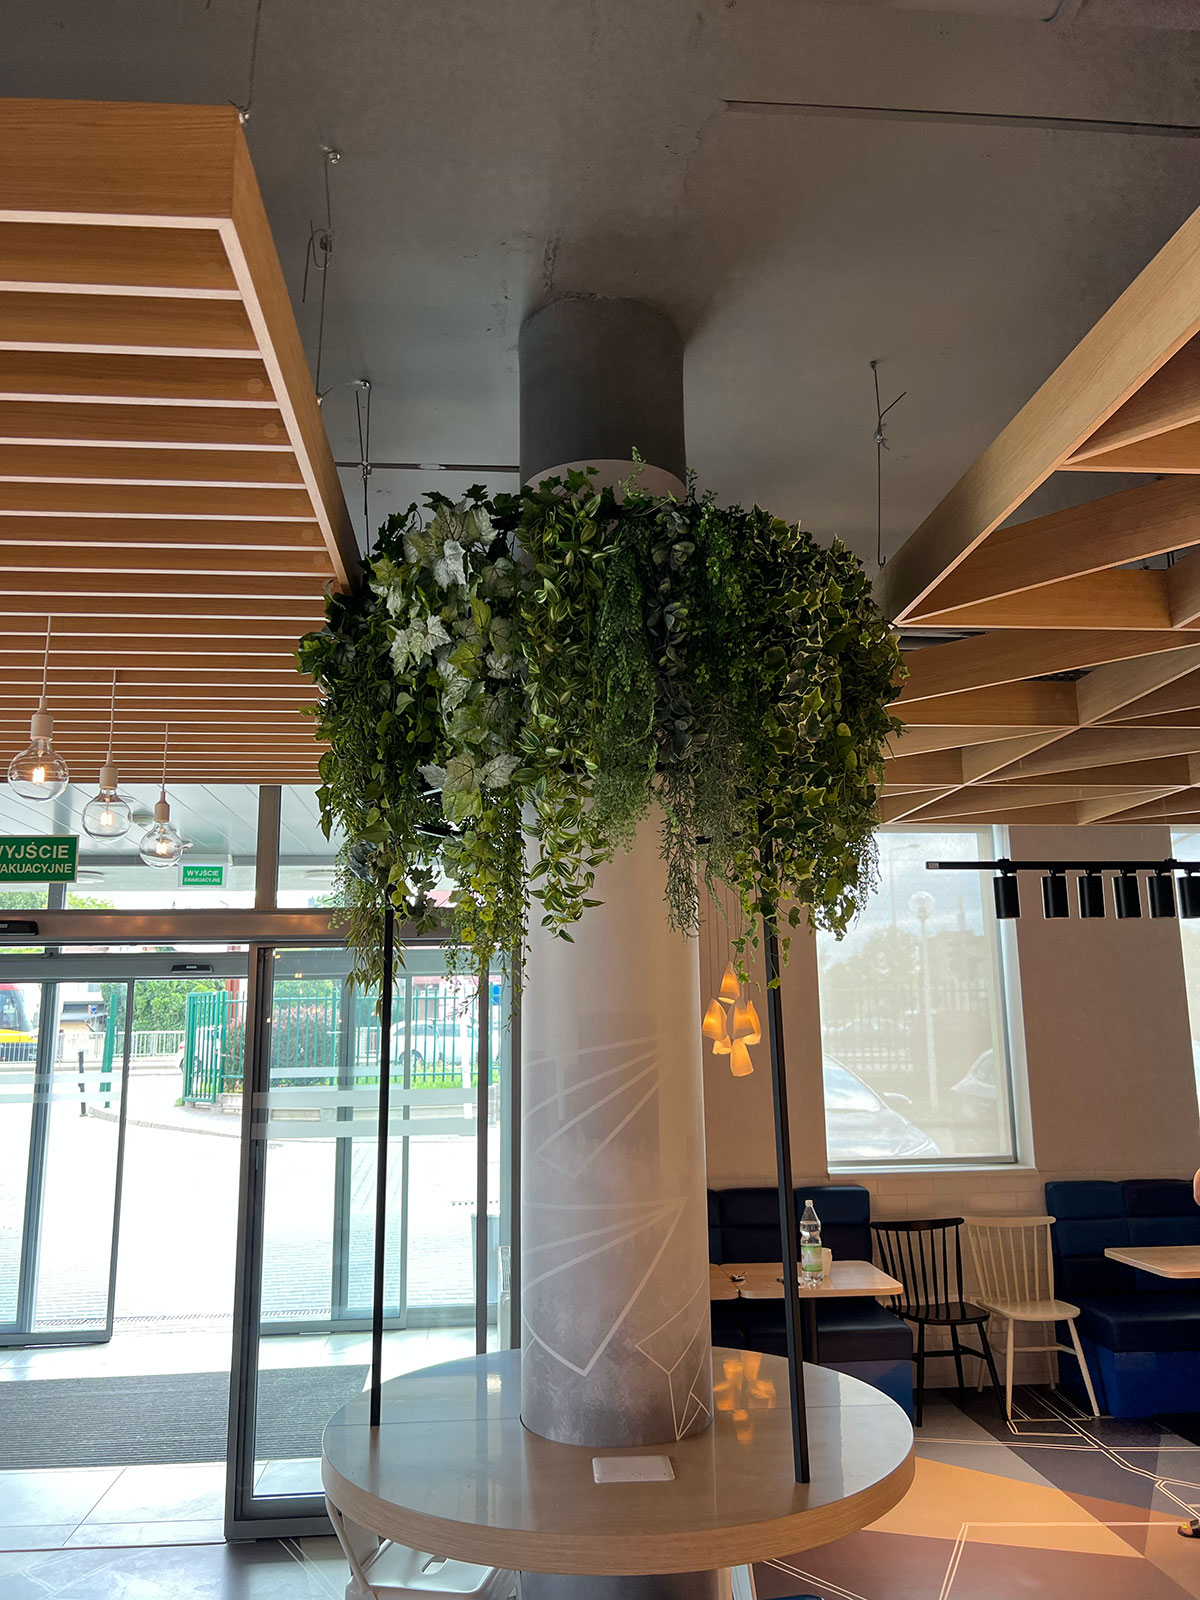 Roślina Booksy zwisająca z sufitu w restauracji.